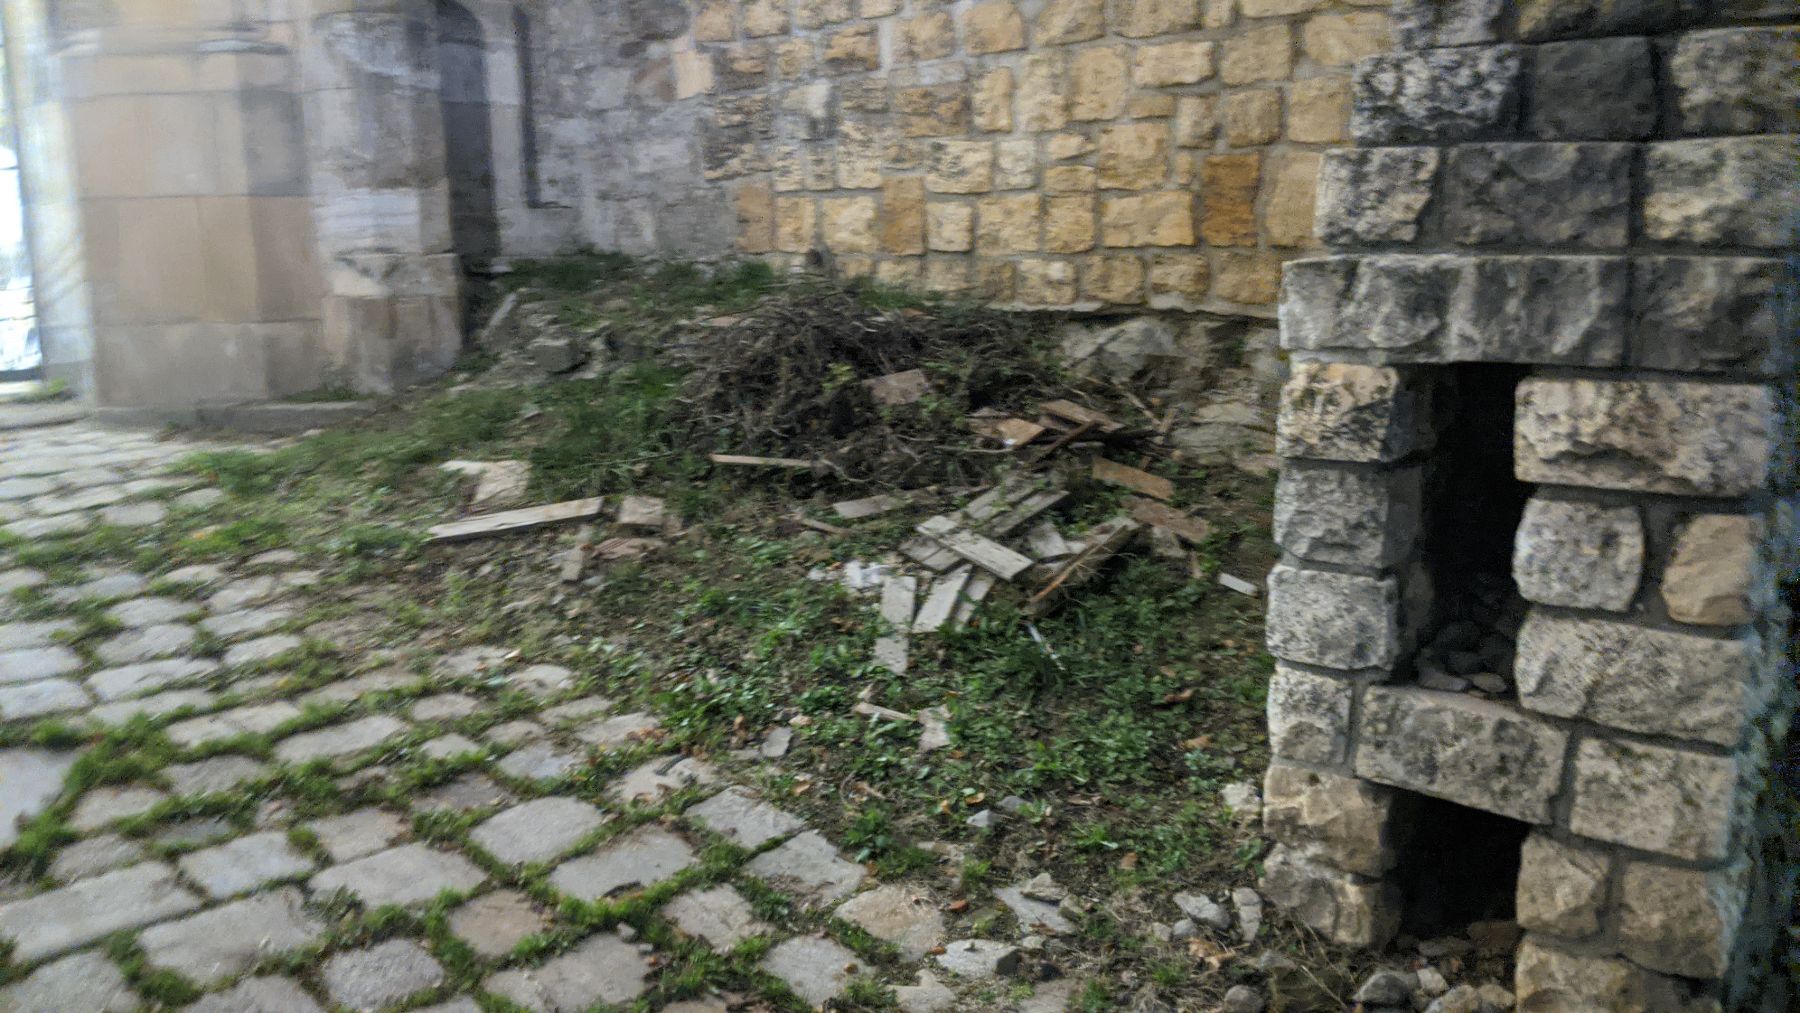 Zámocké schody-neporiadok a odpadky-neporiadok vo verejnom priestranstve,  Staré Mesto, Bratislava | Odkazprestarostu.sk